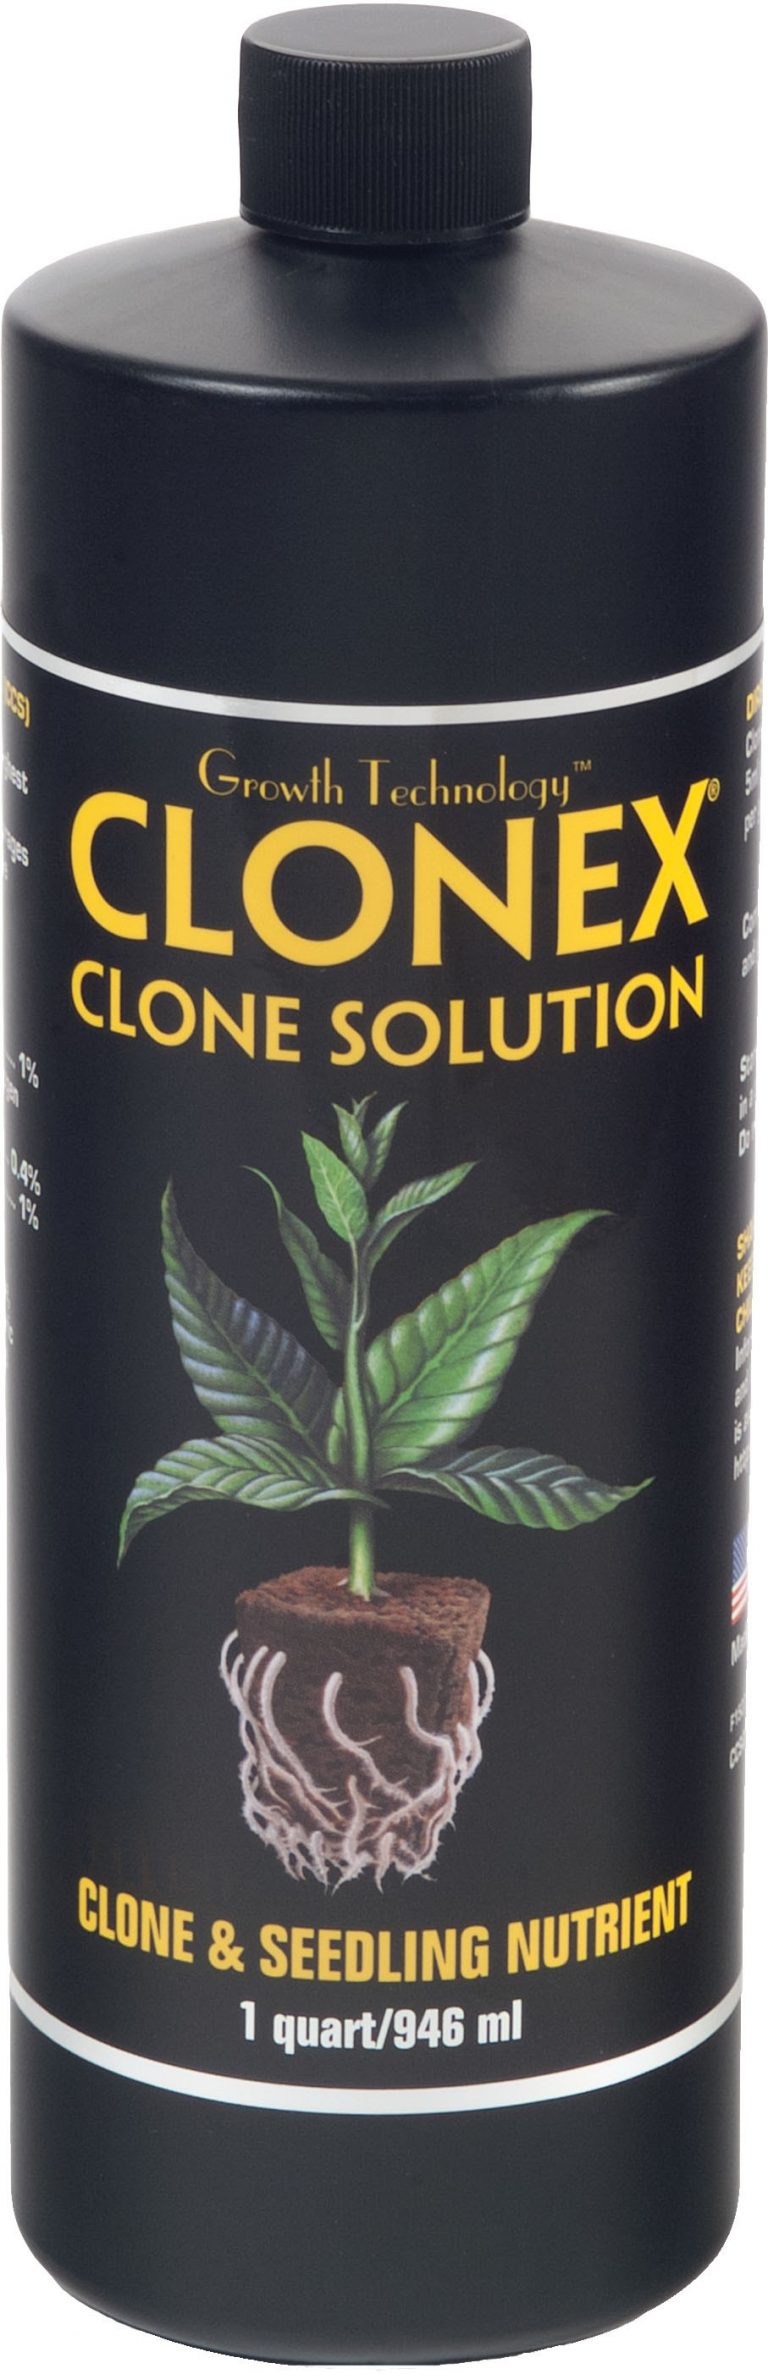 clone x cost